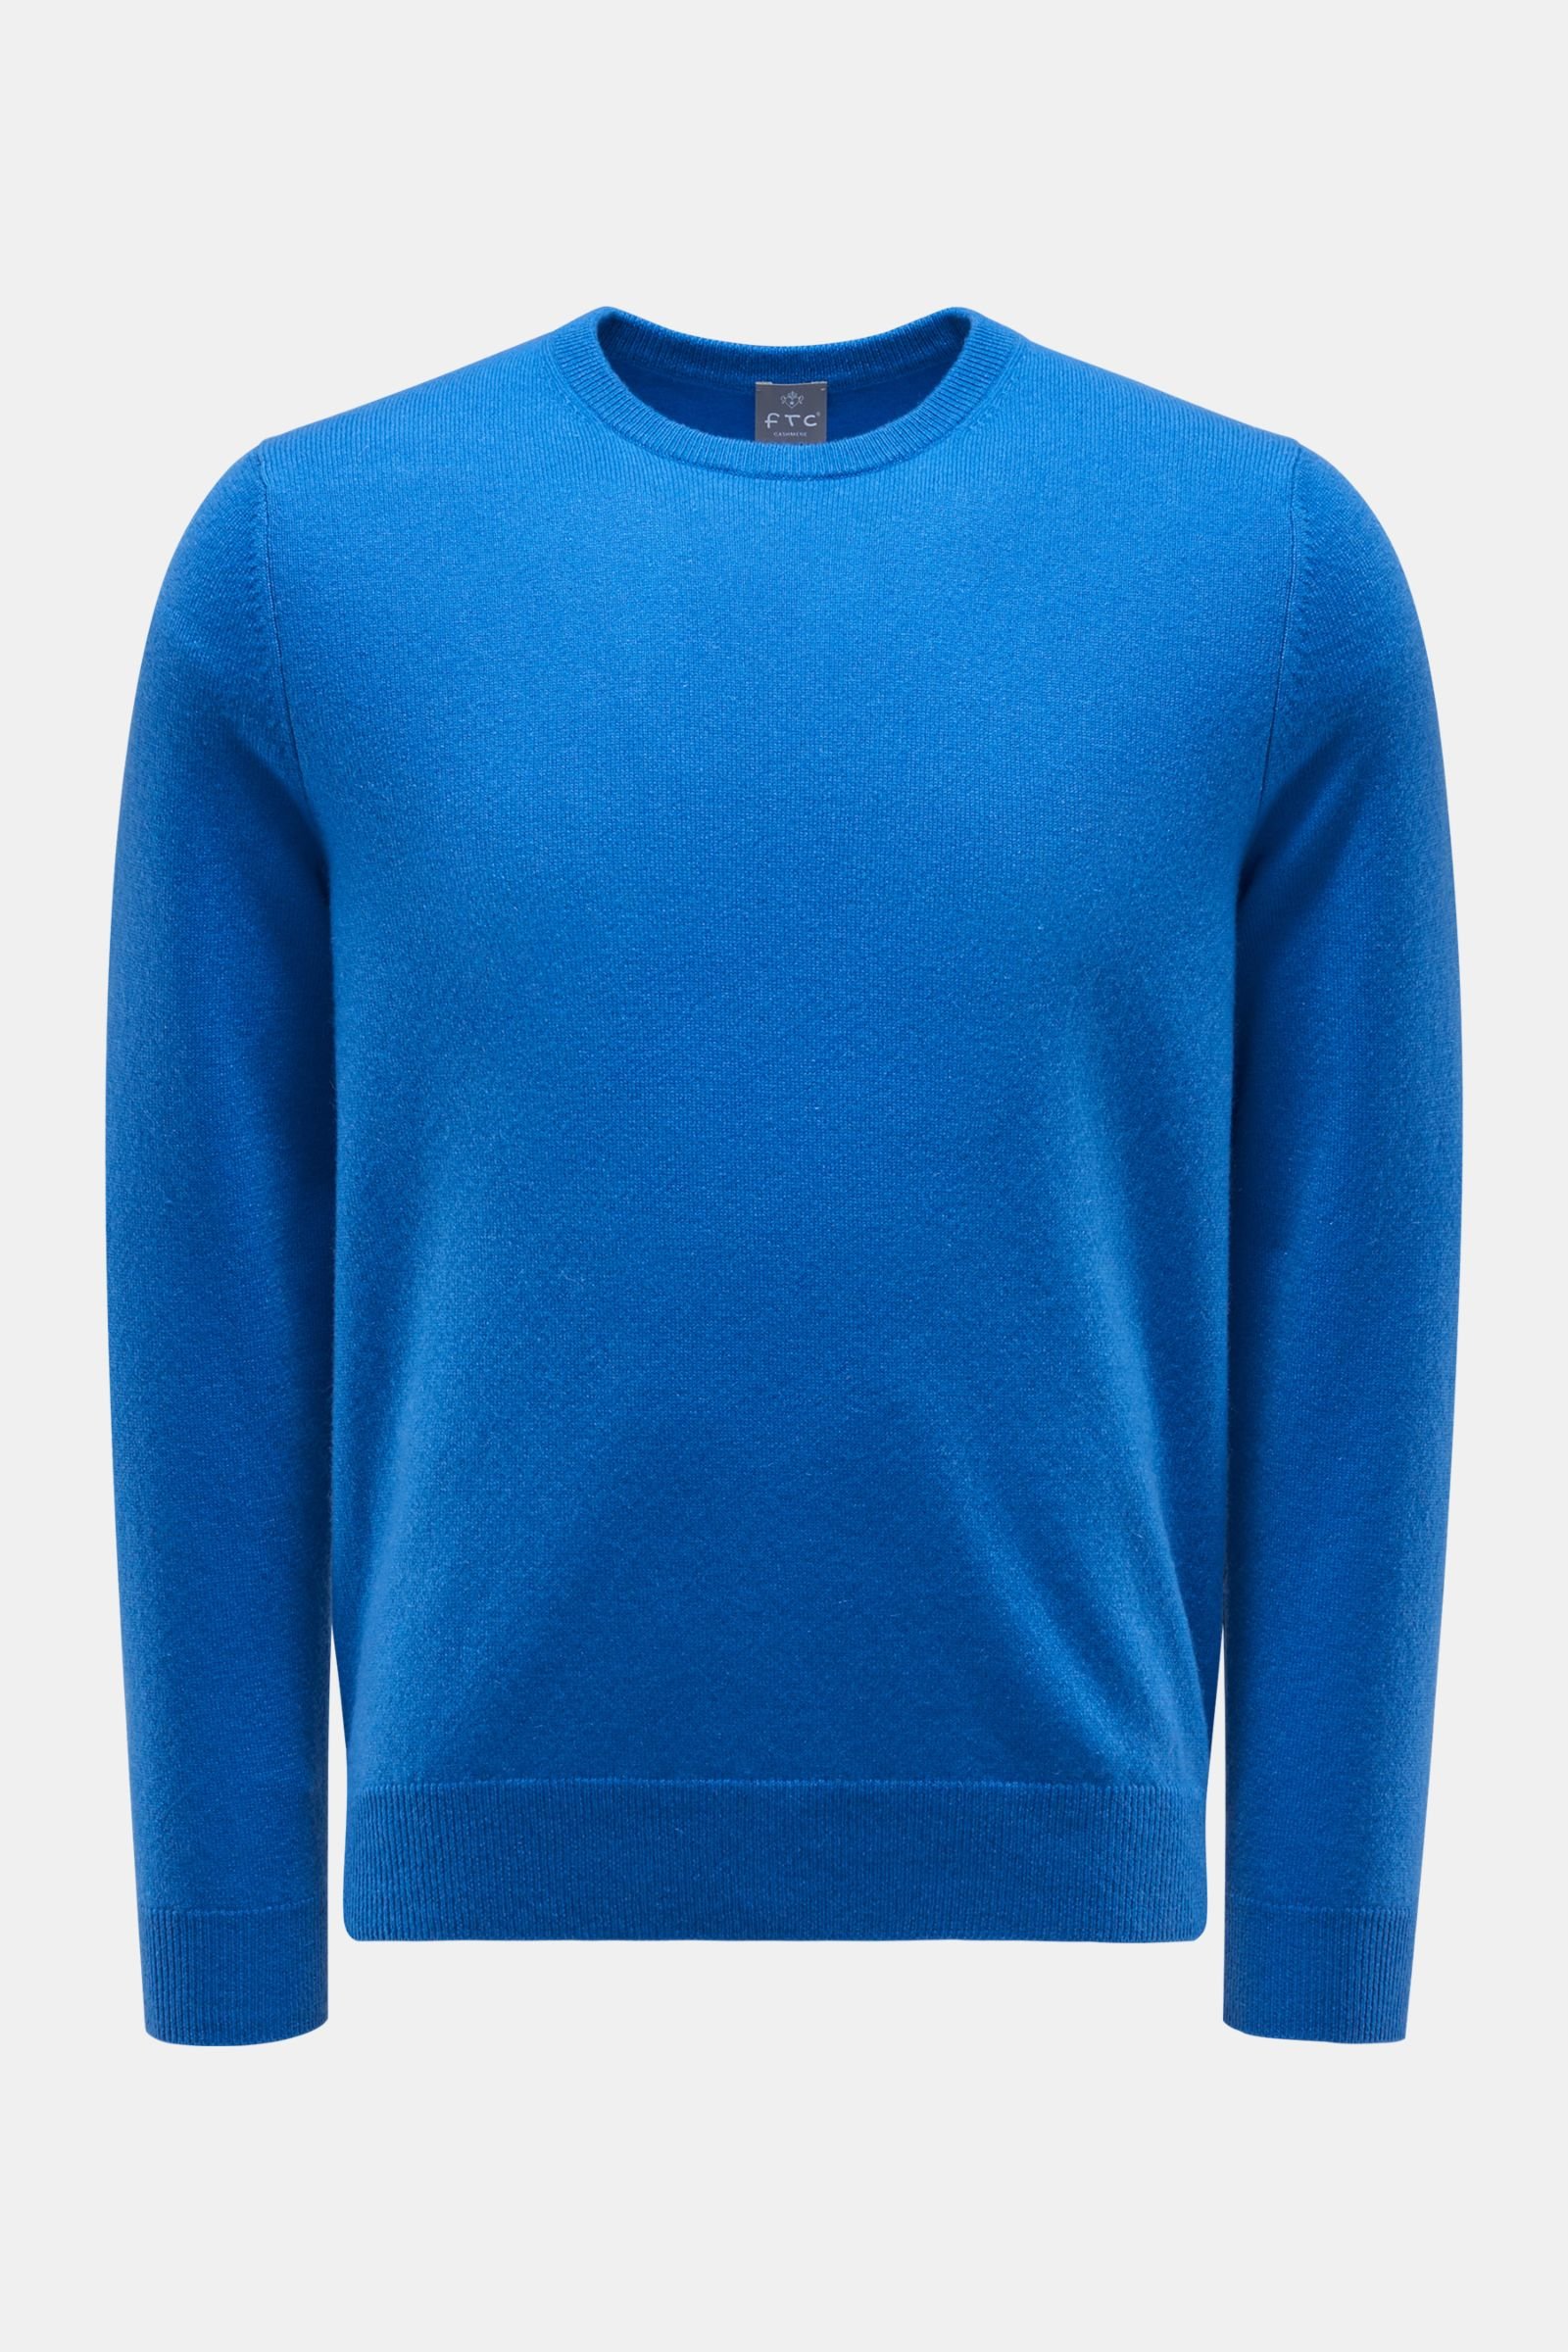 Cashmere Rundhals-Pullover blau